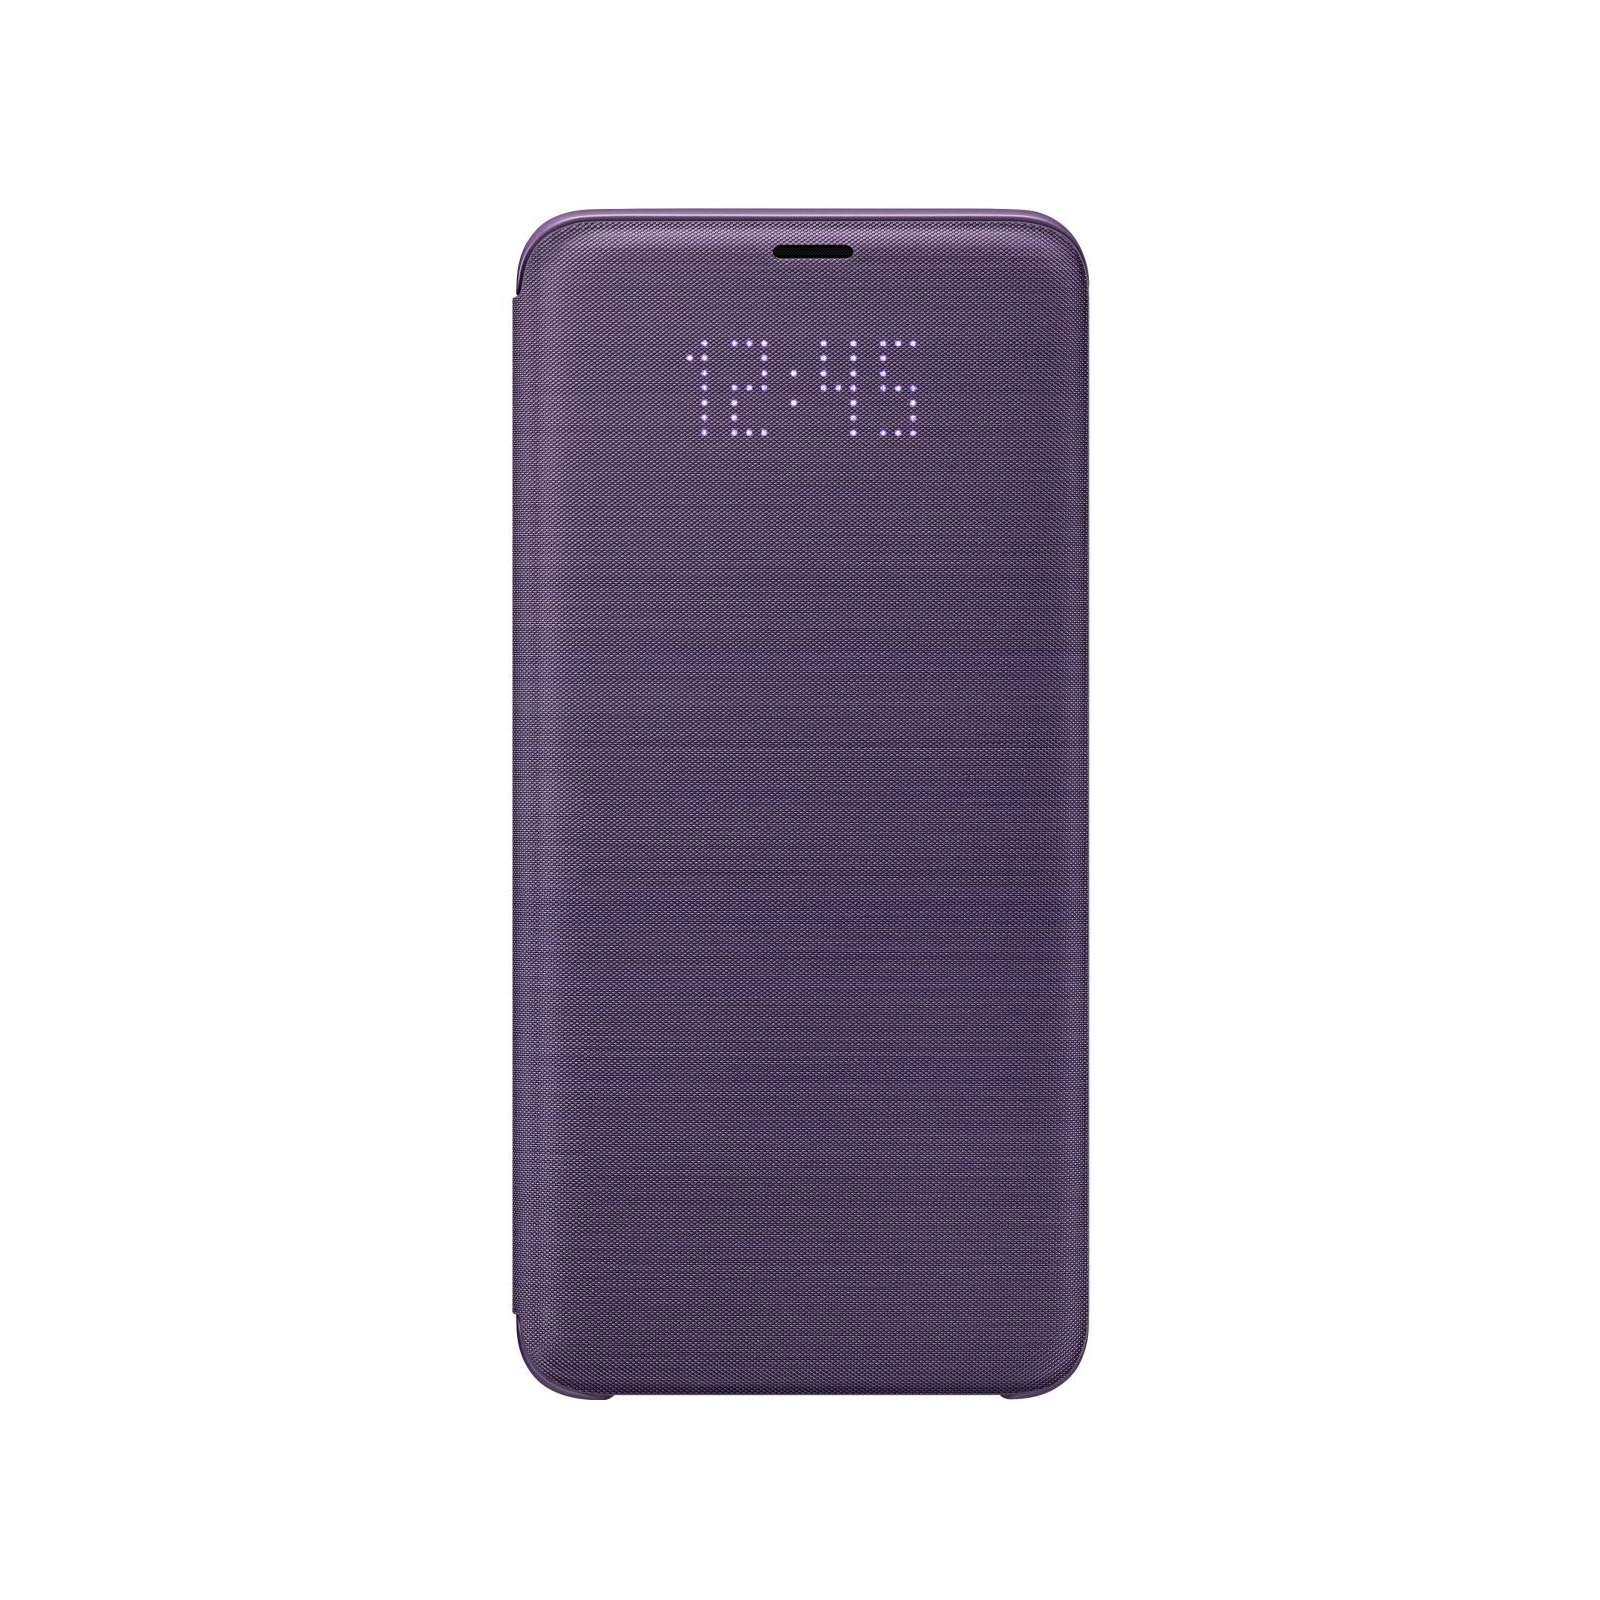 Чехол для мобильного телефона Samsung для Galaxy S9+ (G965) LED View Cover Orchid Gray (EF-NG965PVEGRU)